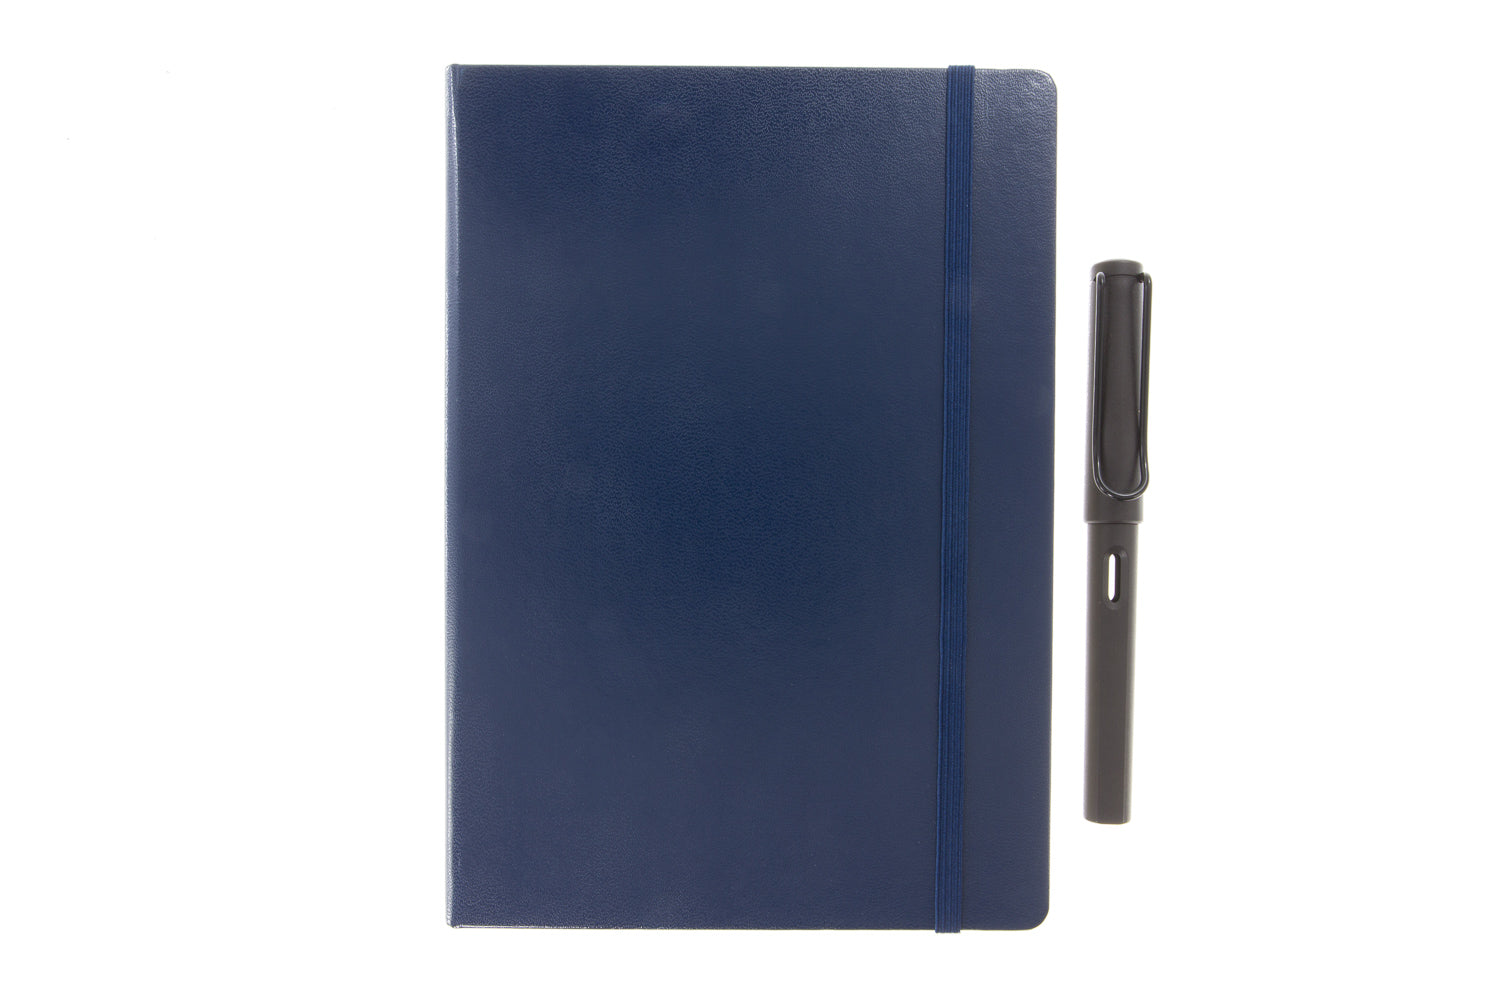 Leuchtturm1917 A5 Notebook Comparison - The Goulet Pen Company